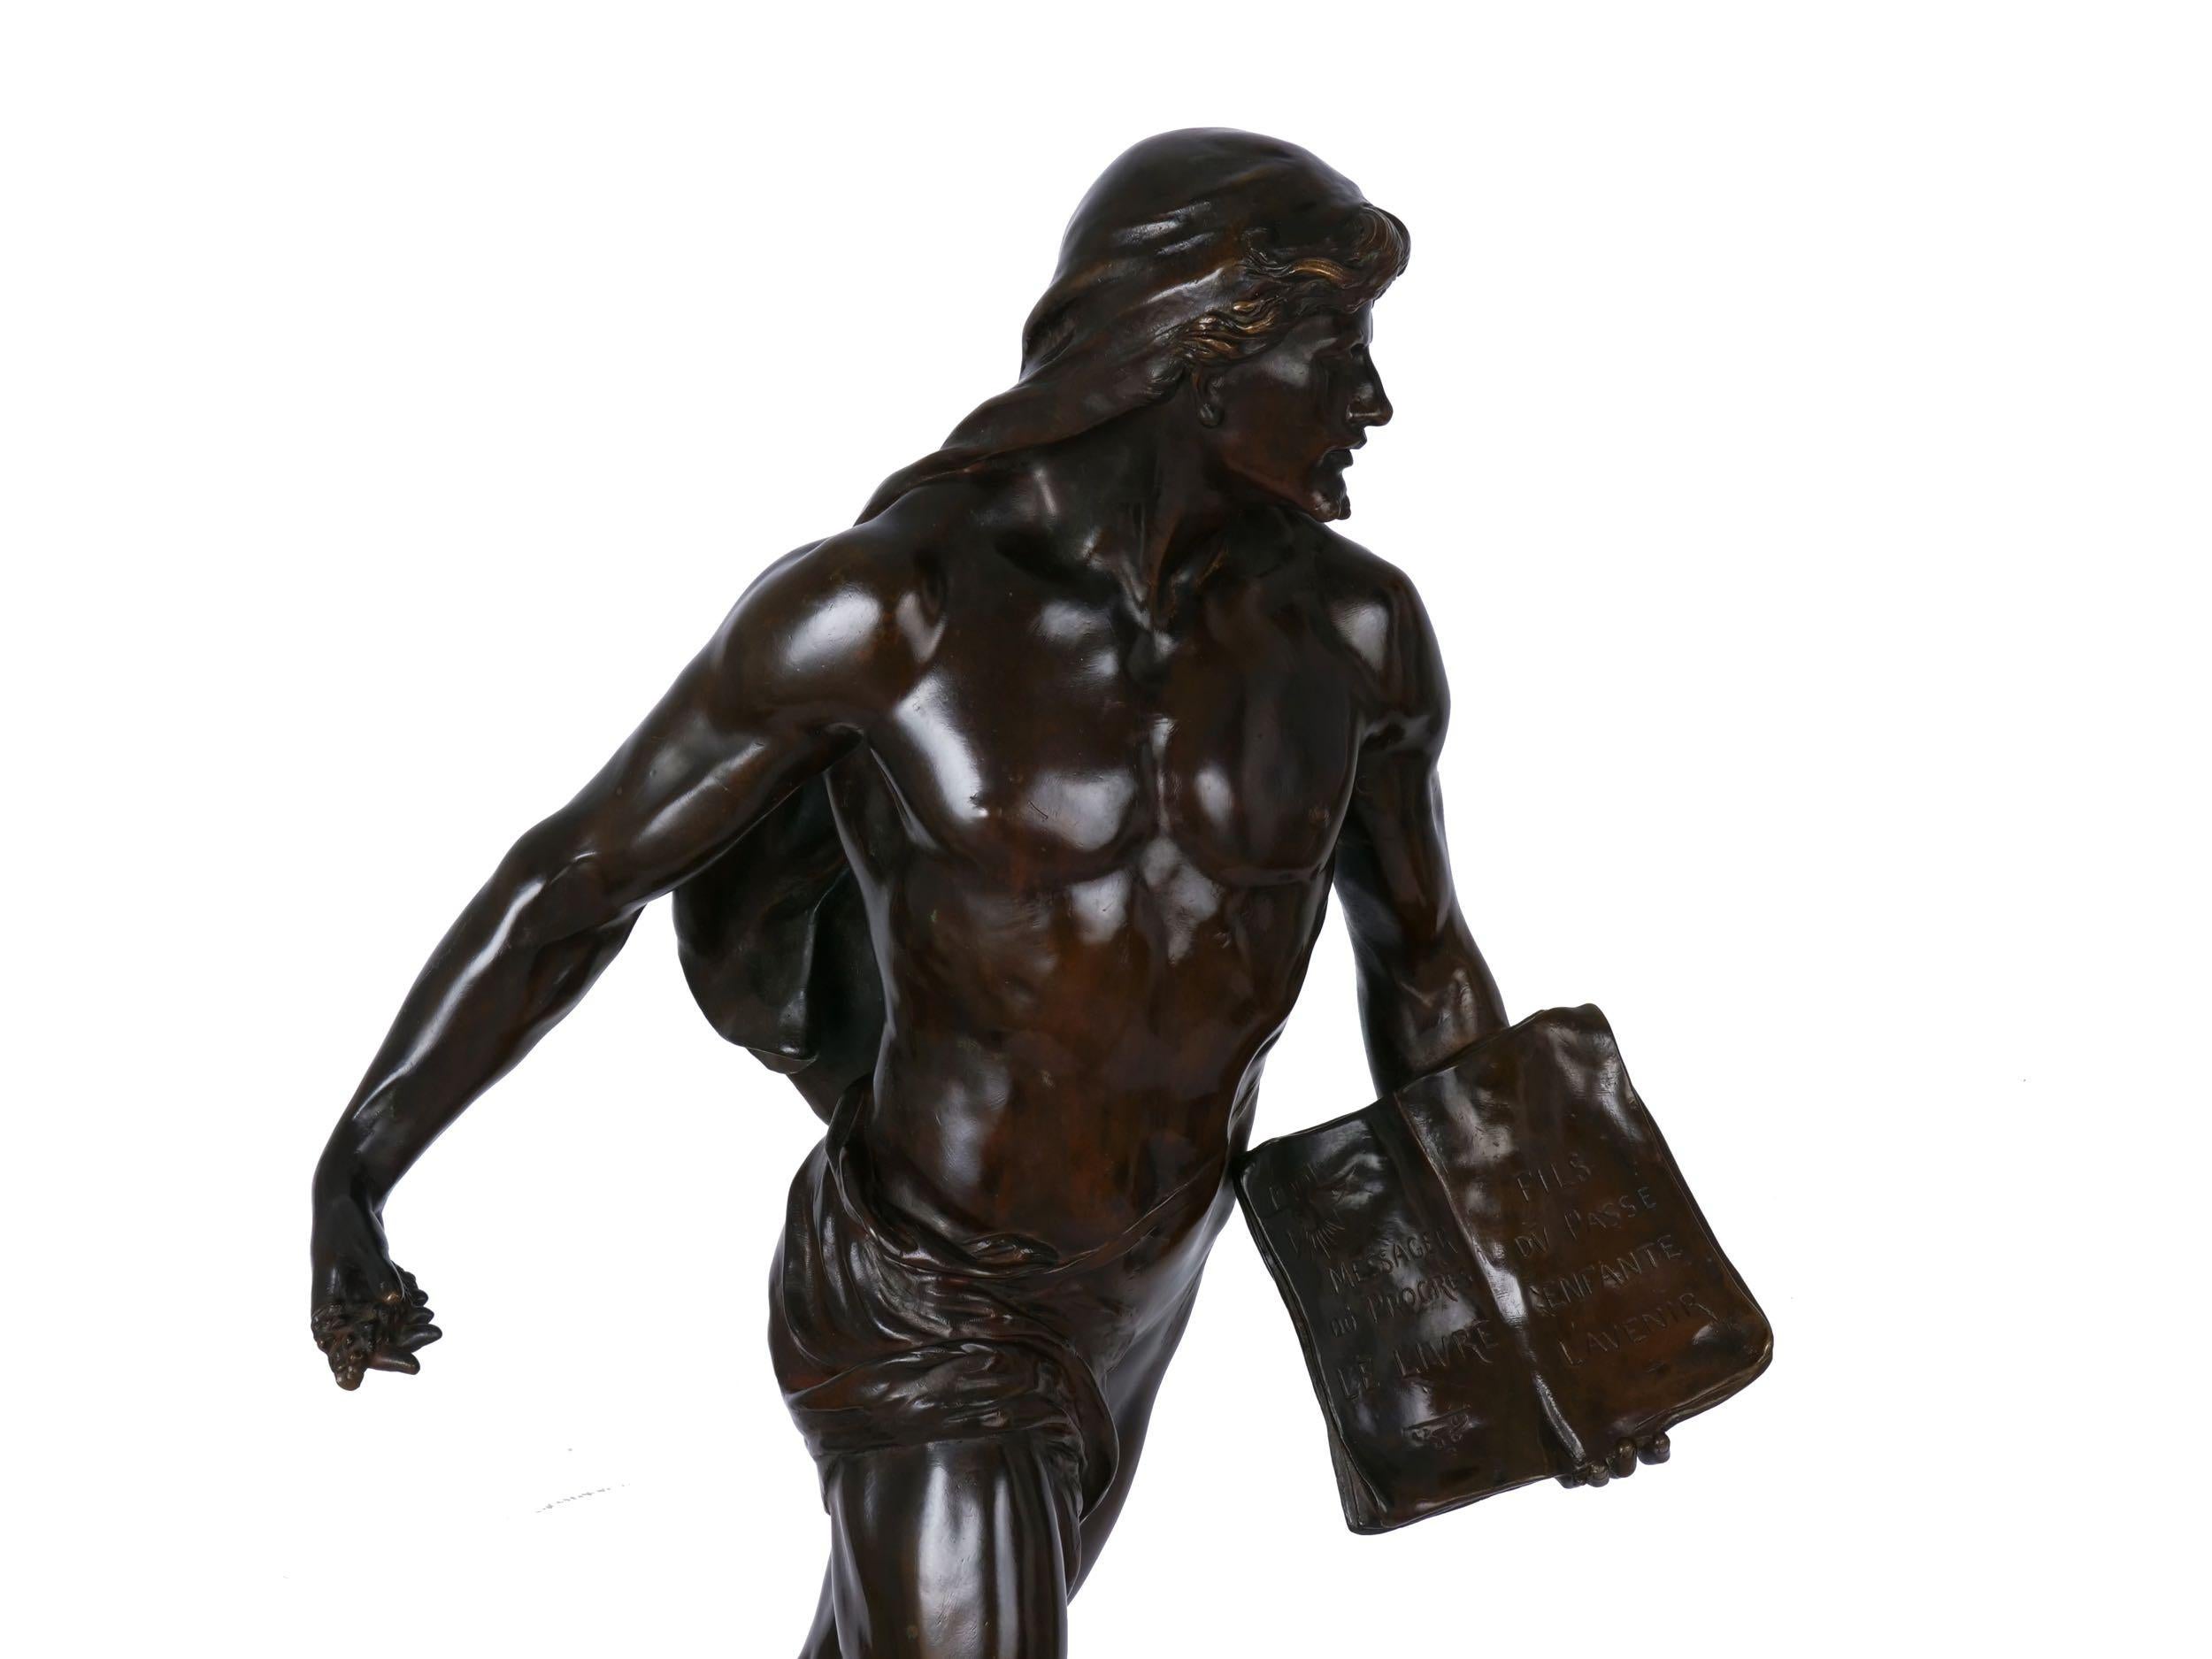 Romantic Authentic French Bronze Sculpture of “Le Semeur” by Emile Picault